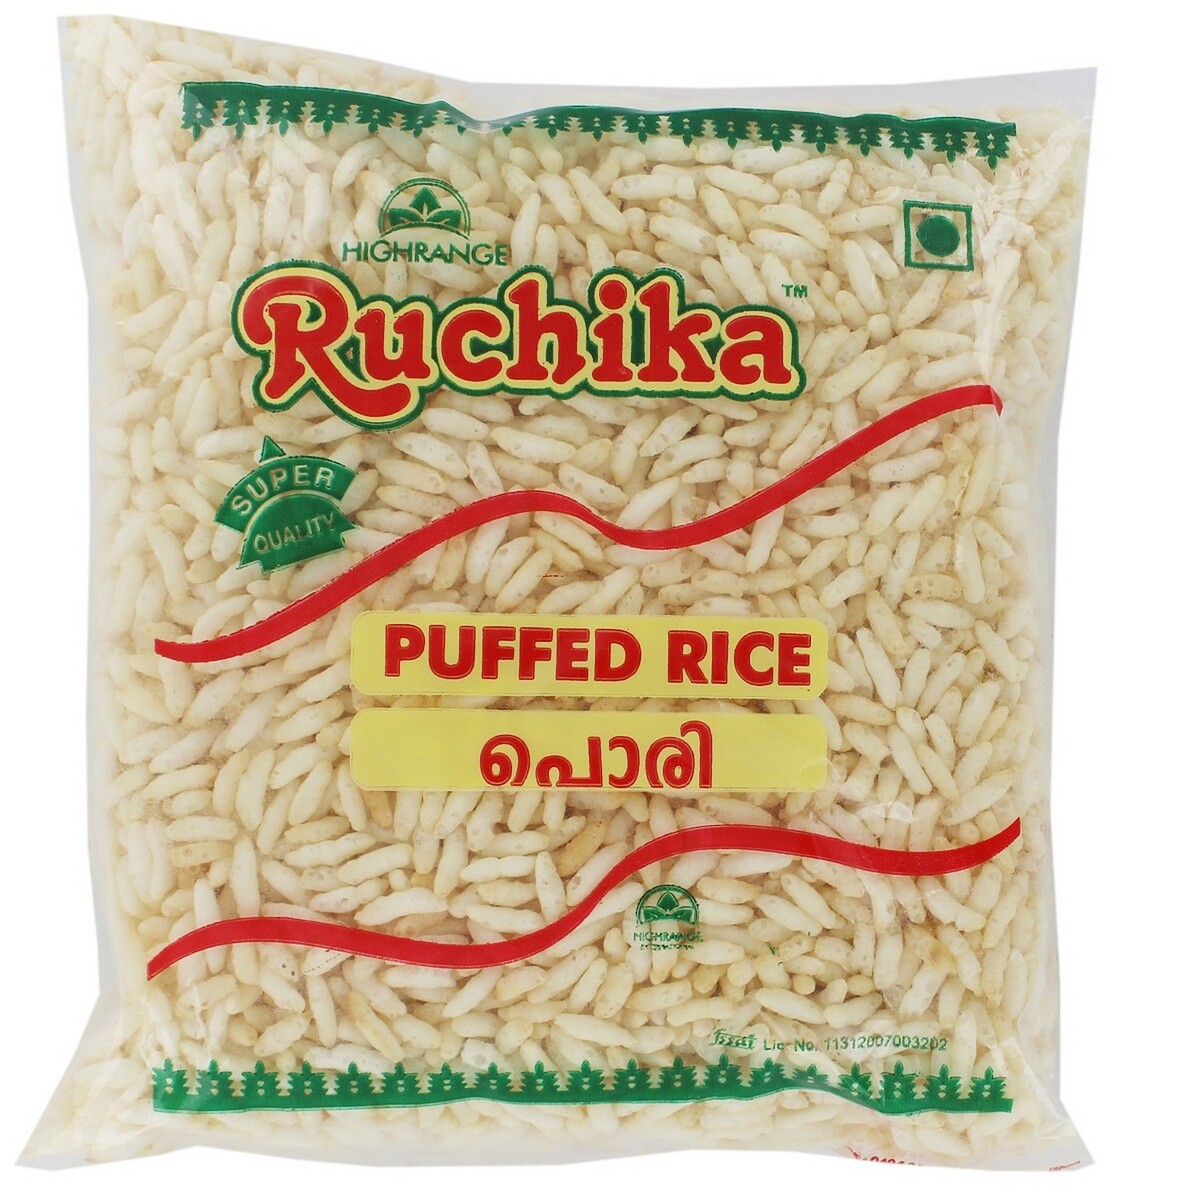 Ruchika Puffed Rice 100g